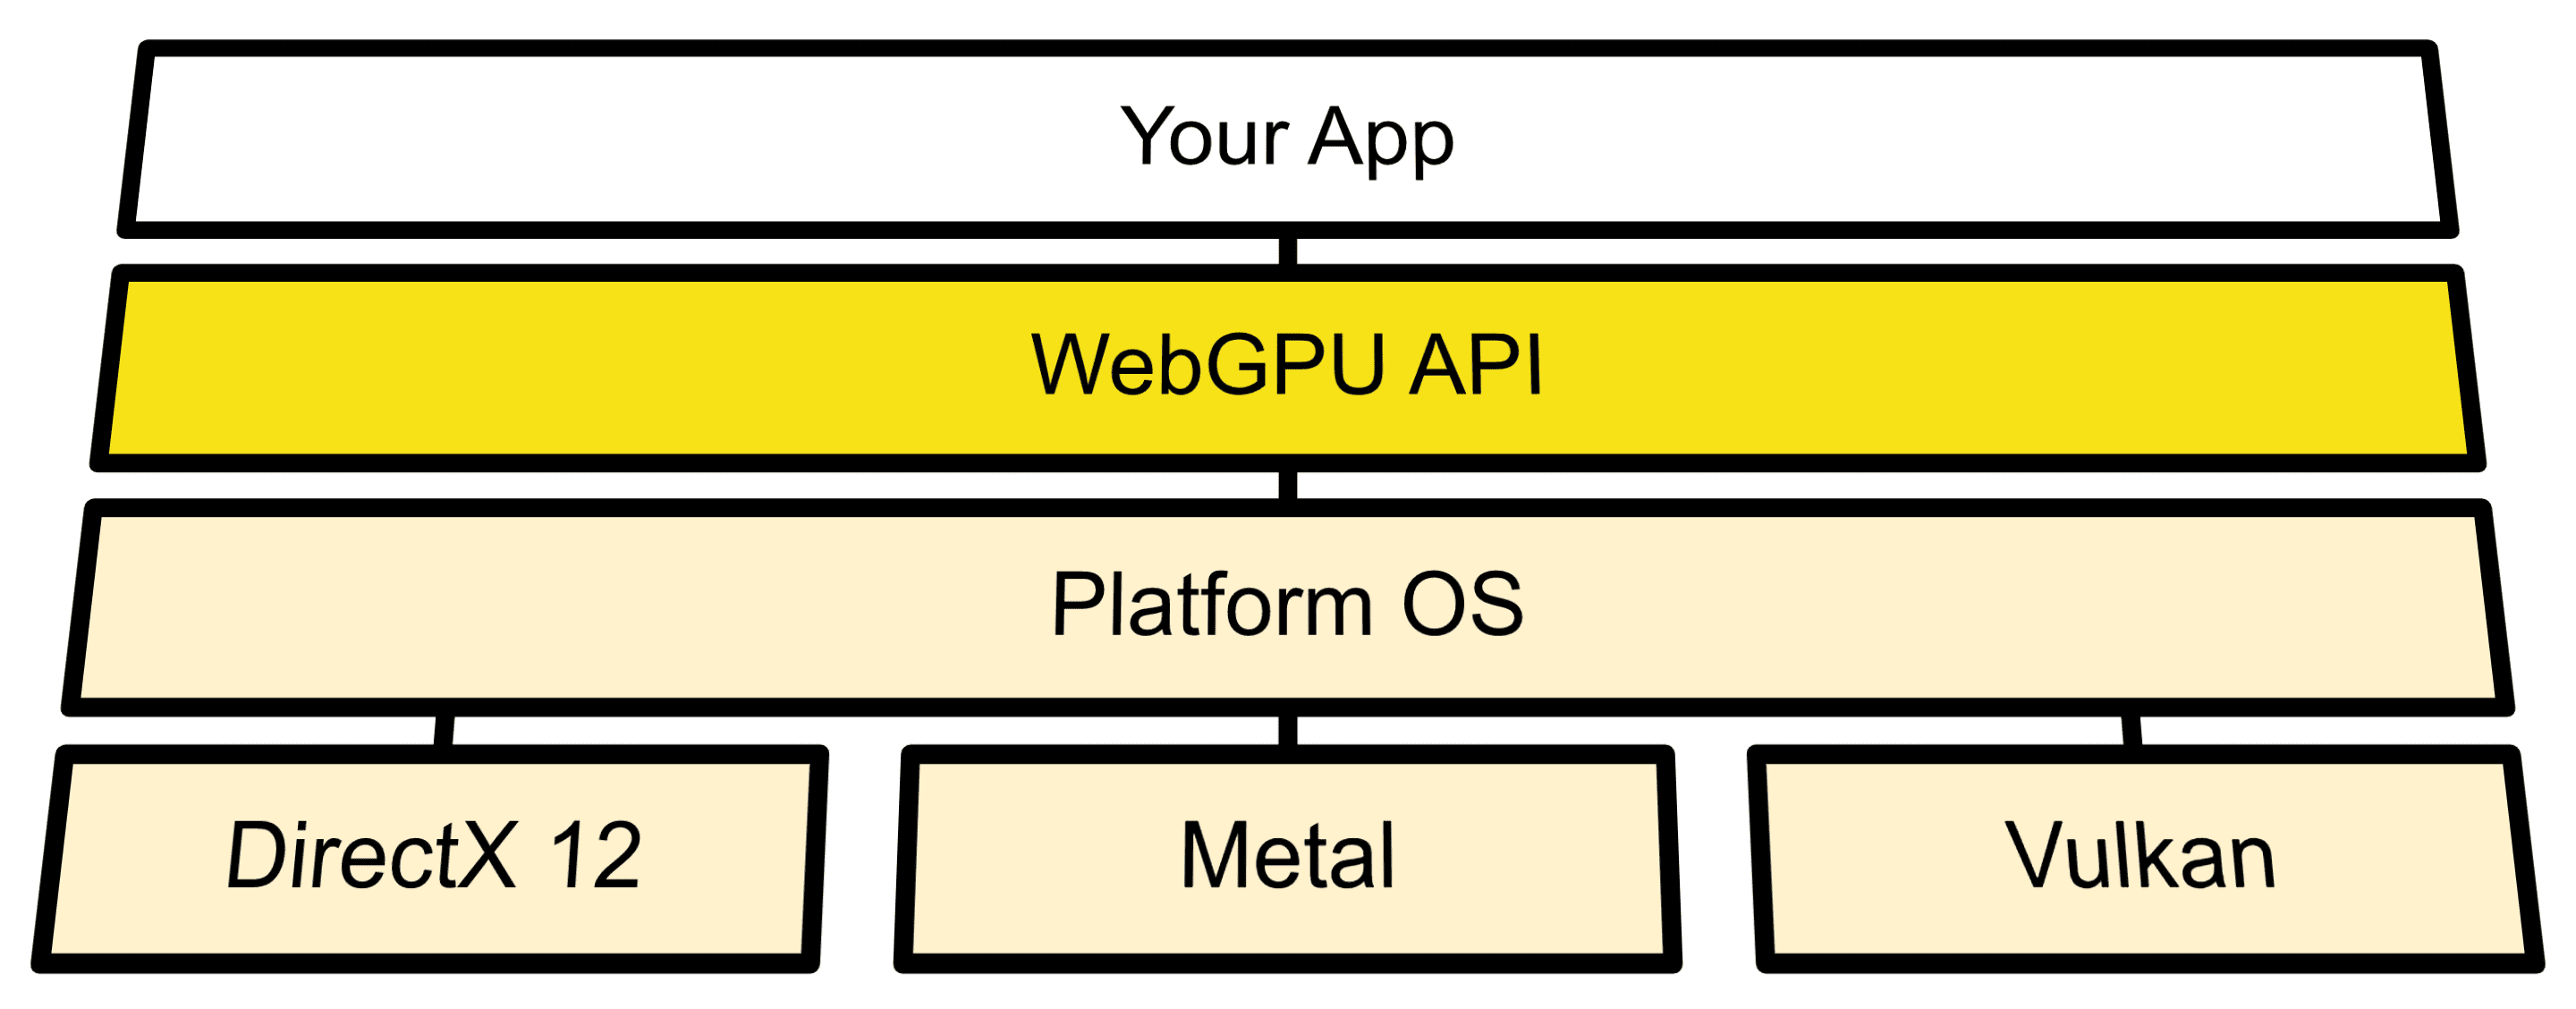 Diagrama de arquitetura mostrando a conexão de WebGPUs entre APIs do SO e Direct3D 12, Metal e Vulkan.